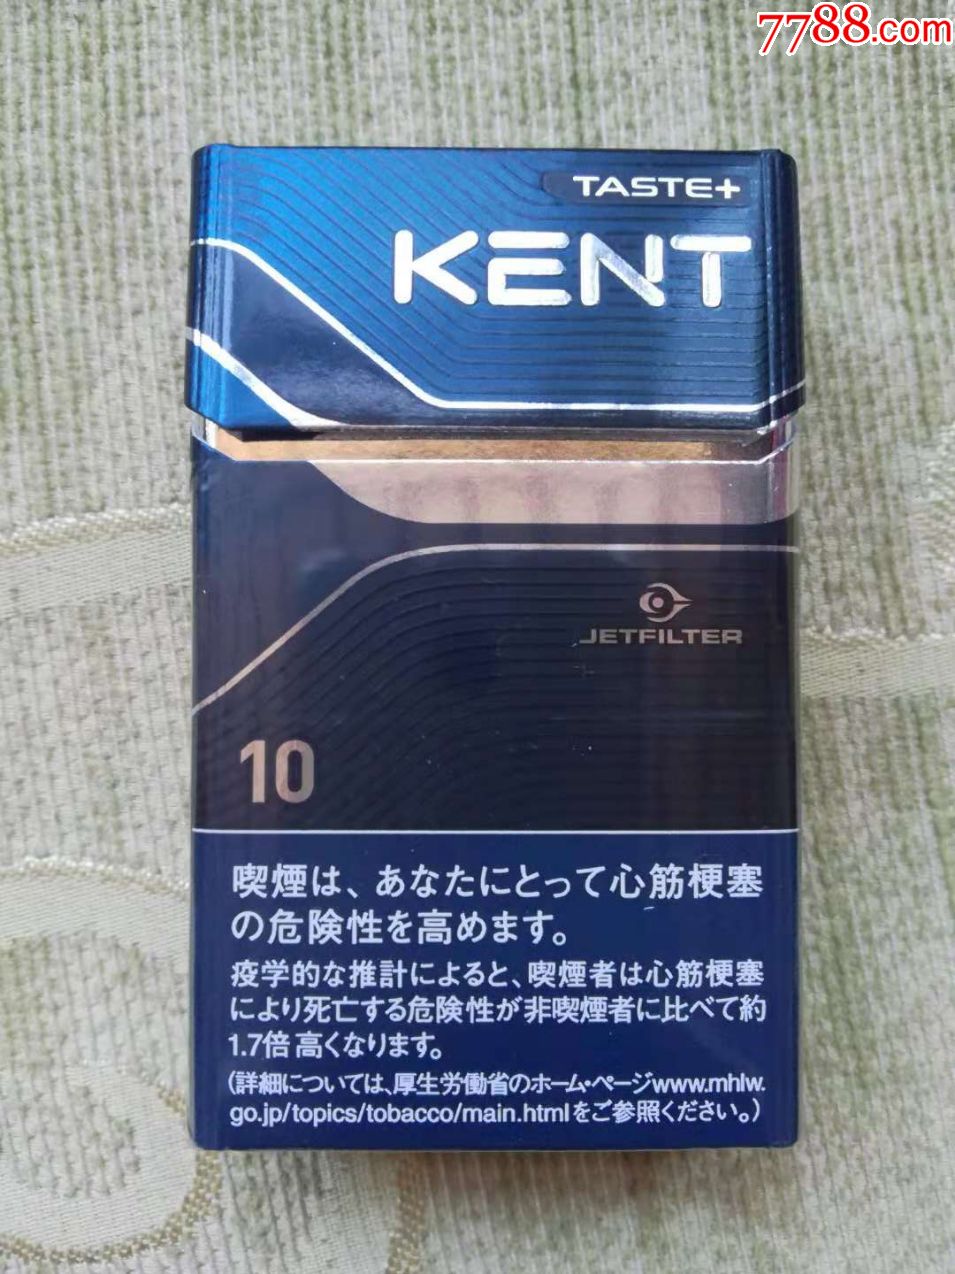 日本kent烟图片